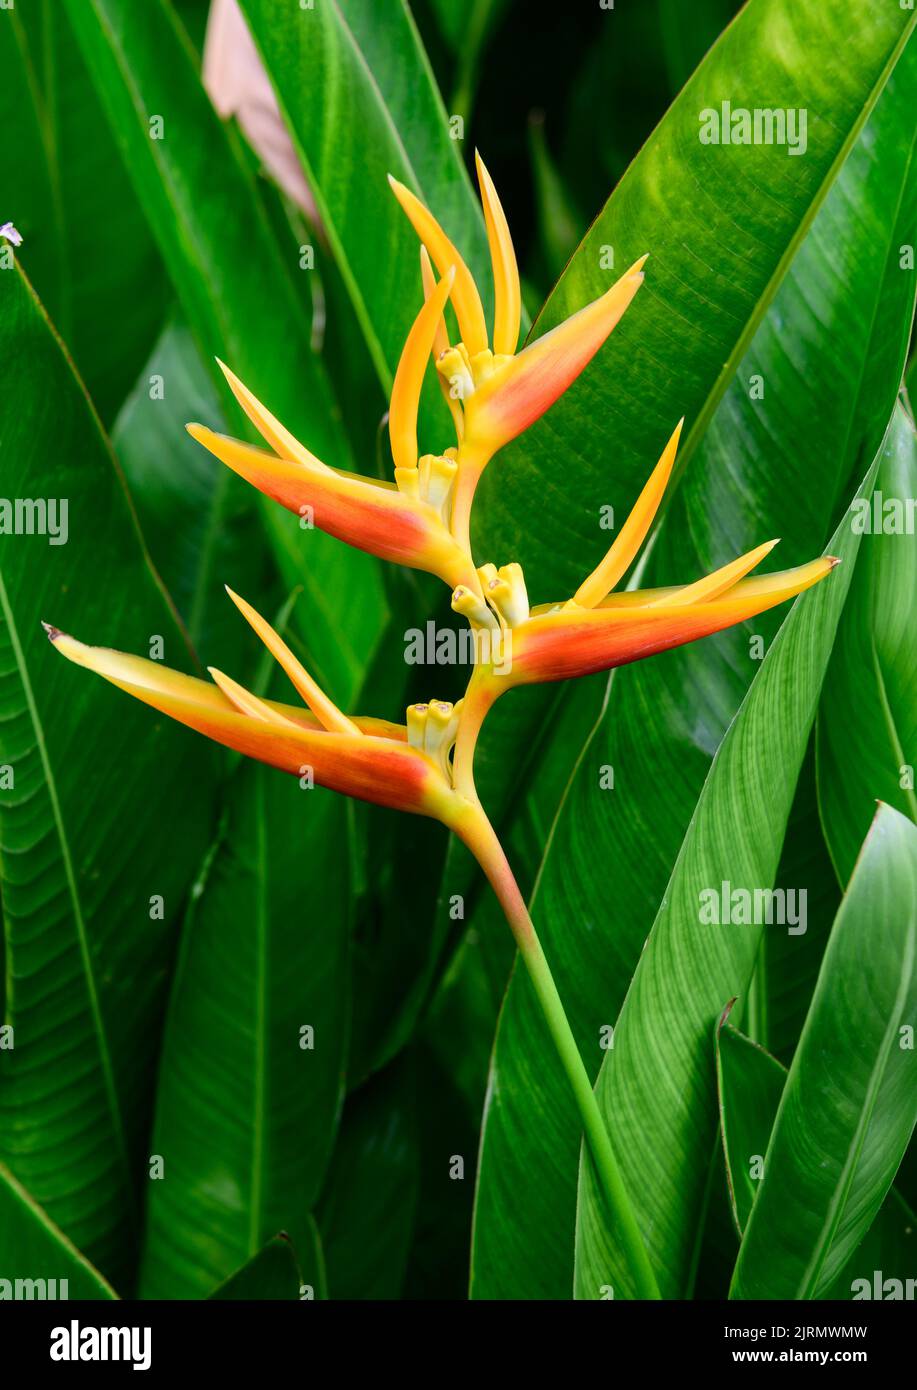 Bird of paradise flower blossom in botanic garden Stock Photo